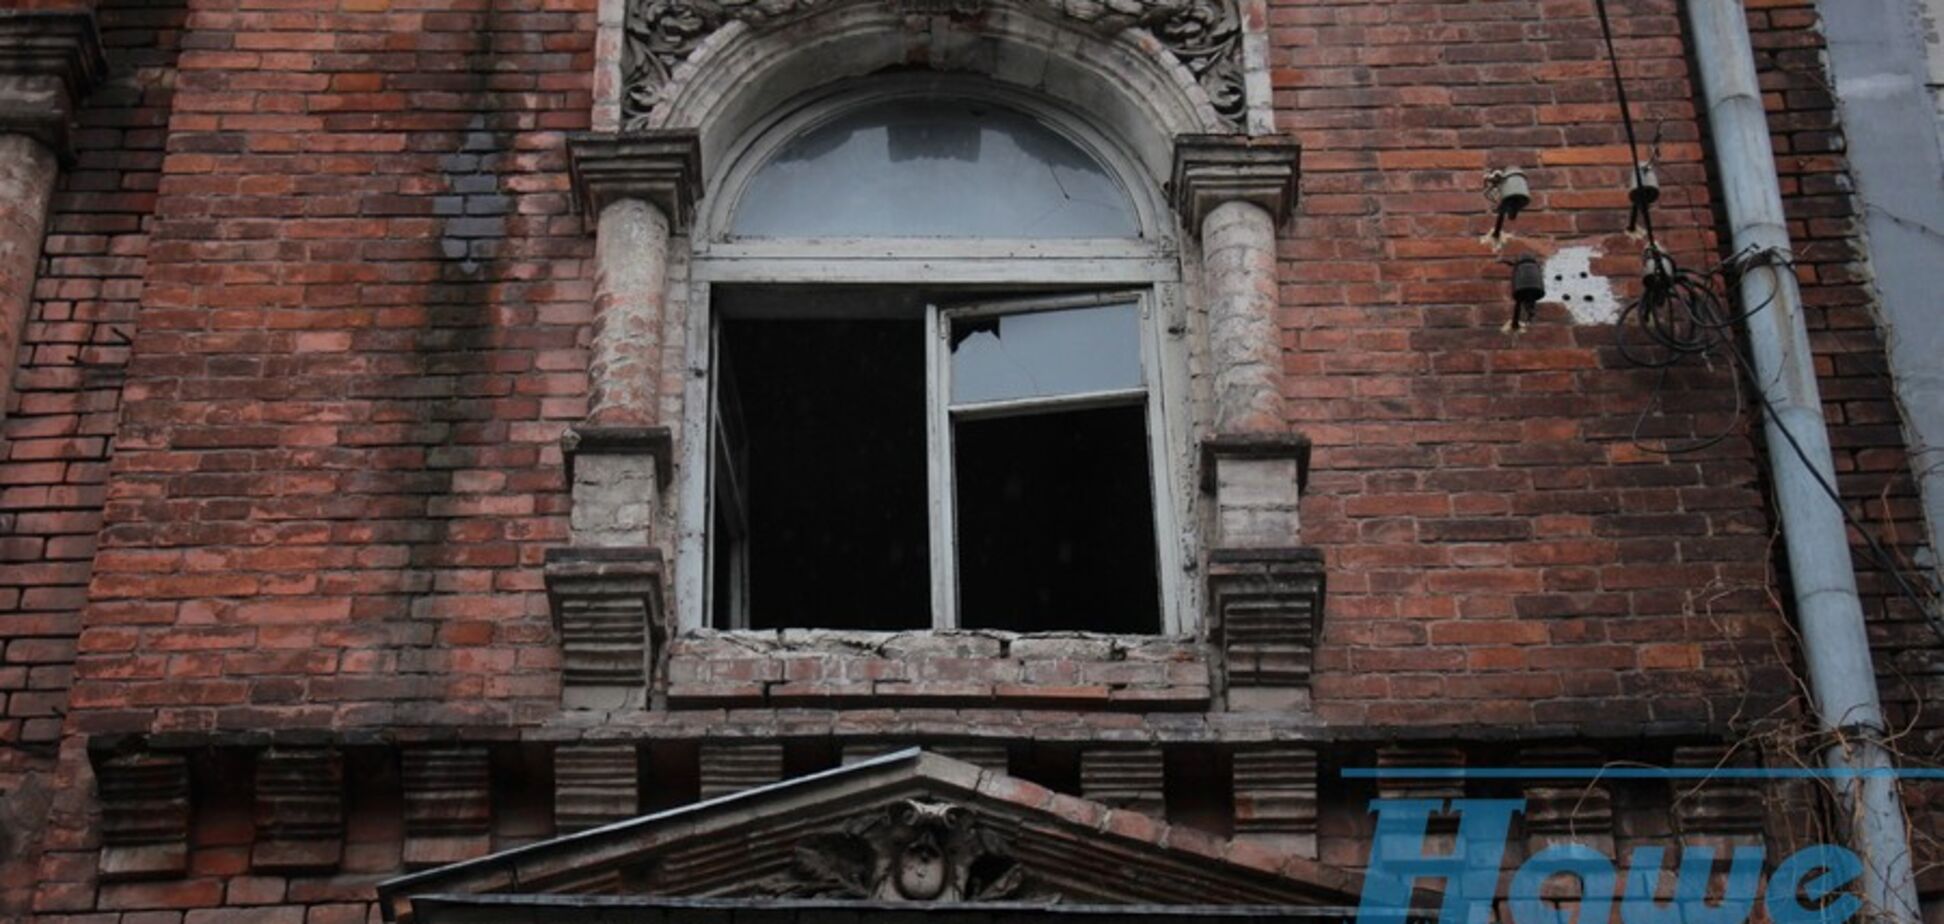 Как выглядит квартал разрушенных зданий в Днепре: фото 